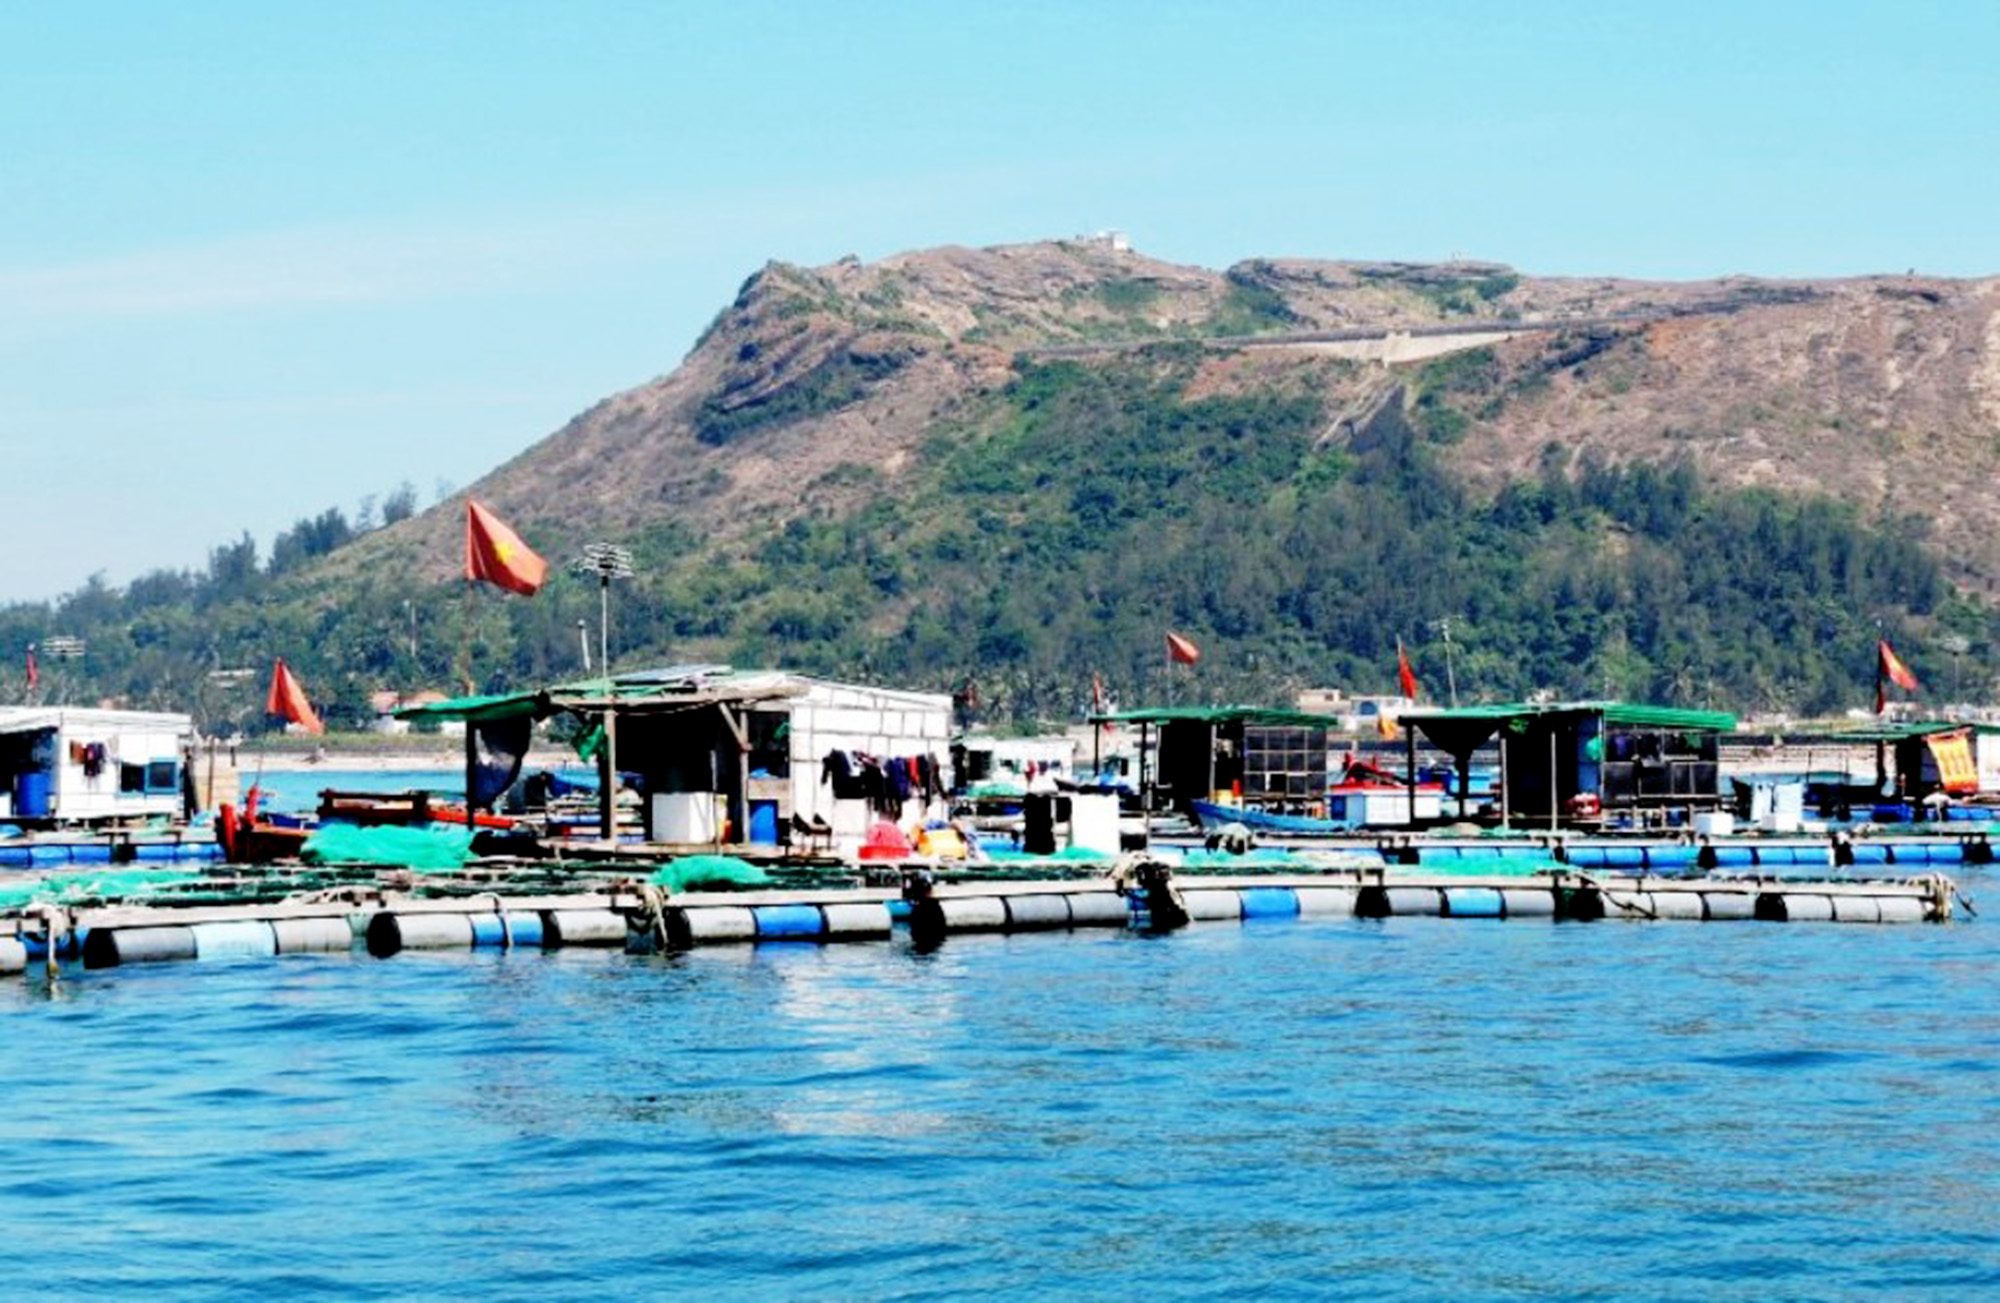  Nuôi cá bớp thương phẩm đã giúp nhiều hộ nuôi ở đảo Lý Sơn, tỉnh Quảng Ngãi có thêm nguồn thu nhập đáng kể, trở thành mô hình hiệu quả tiên phong đất đảo.